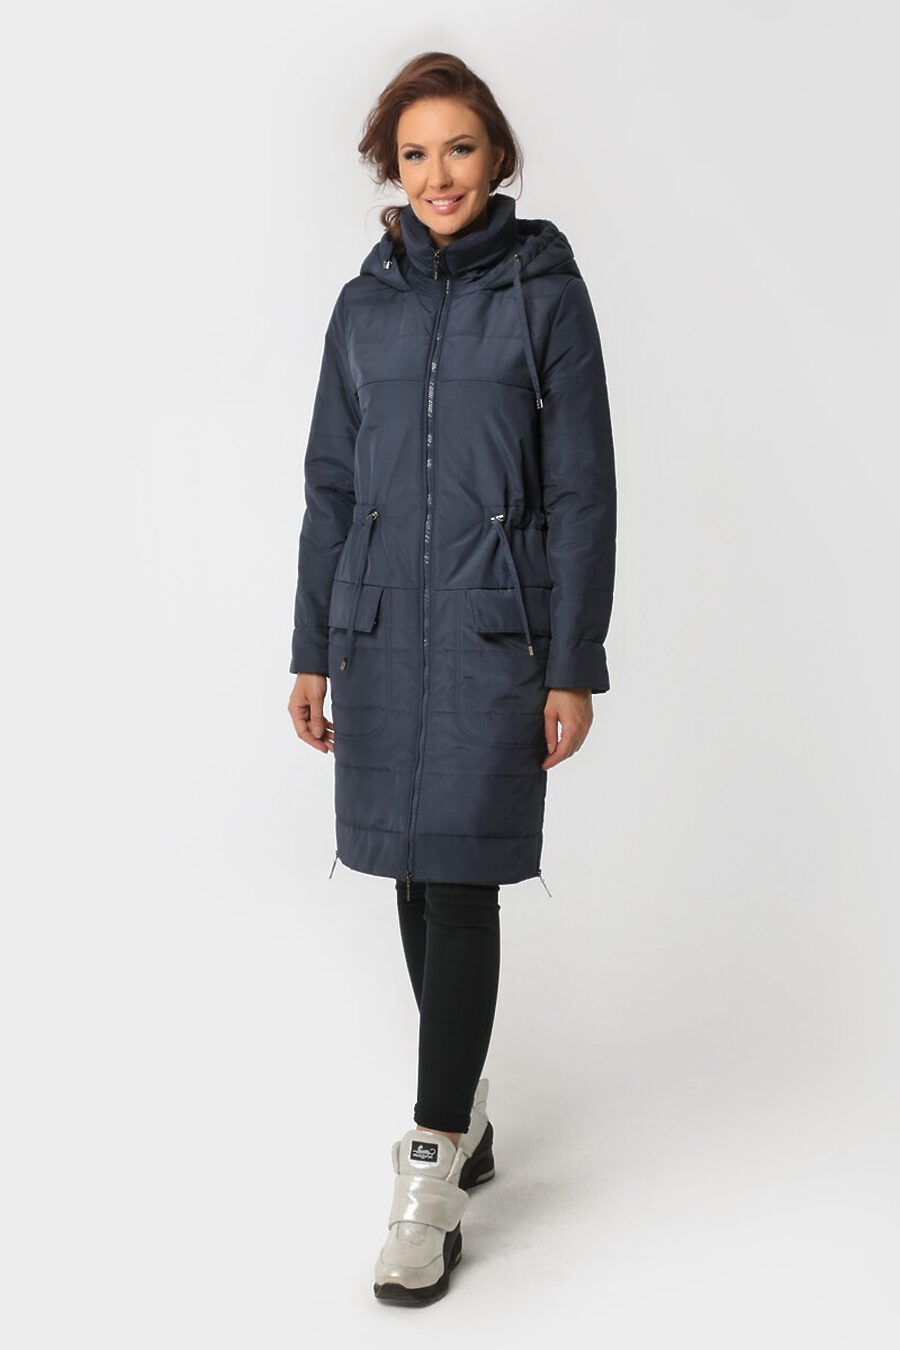 Пальто DIWAY (684817), купить в Moyo.moda